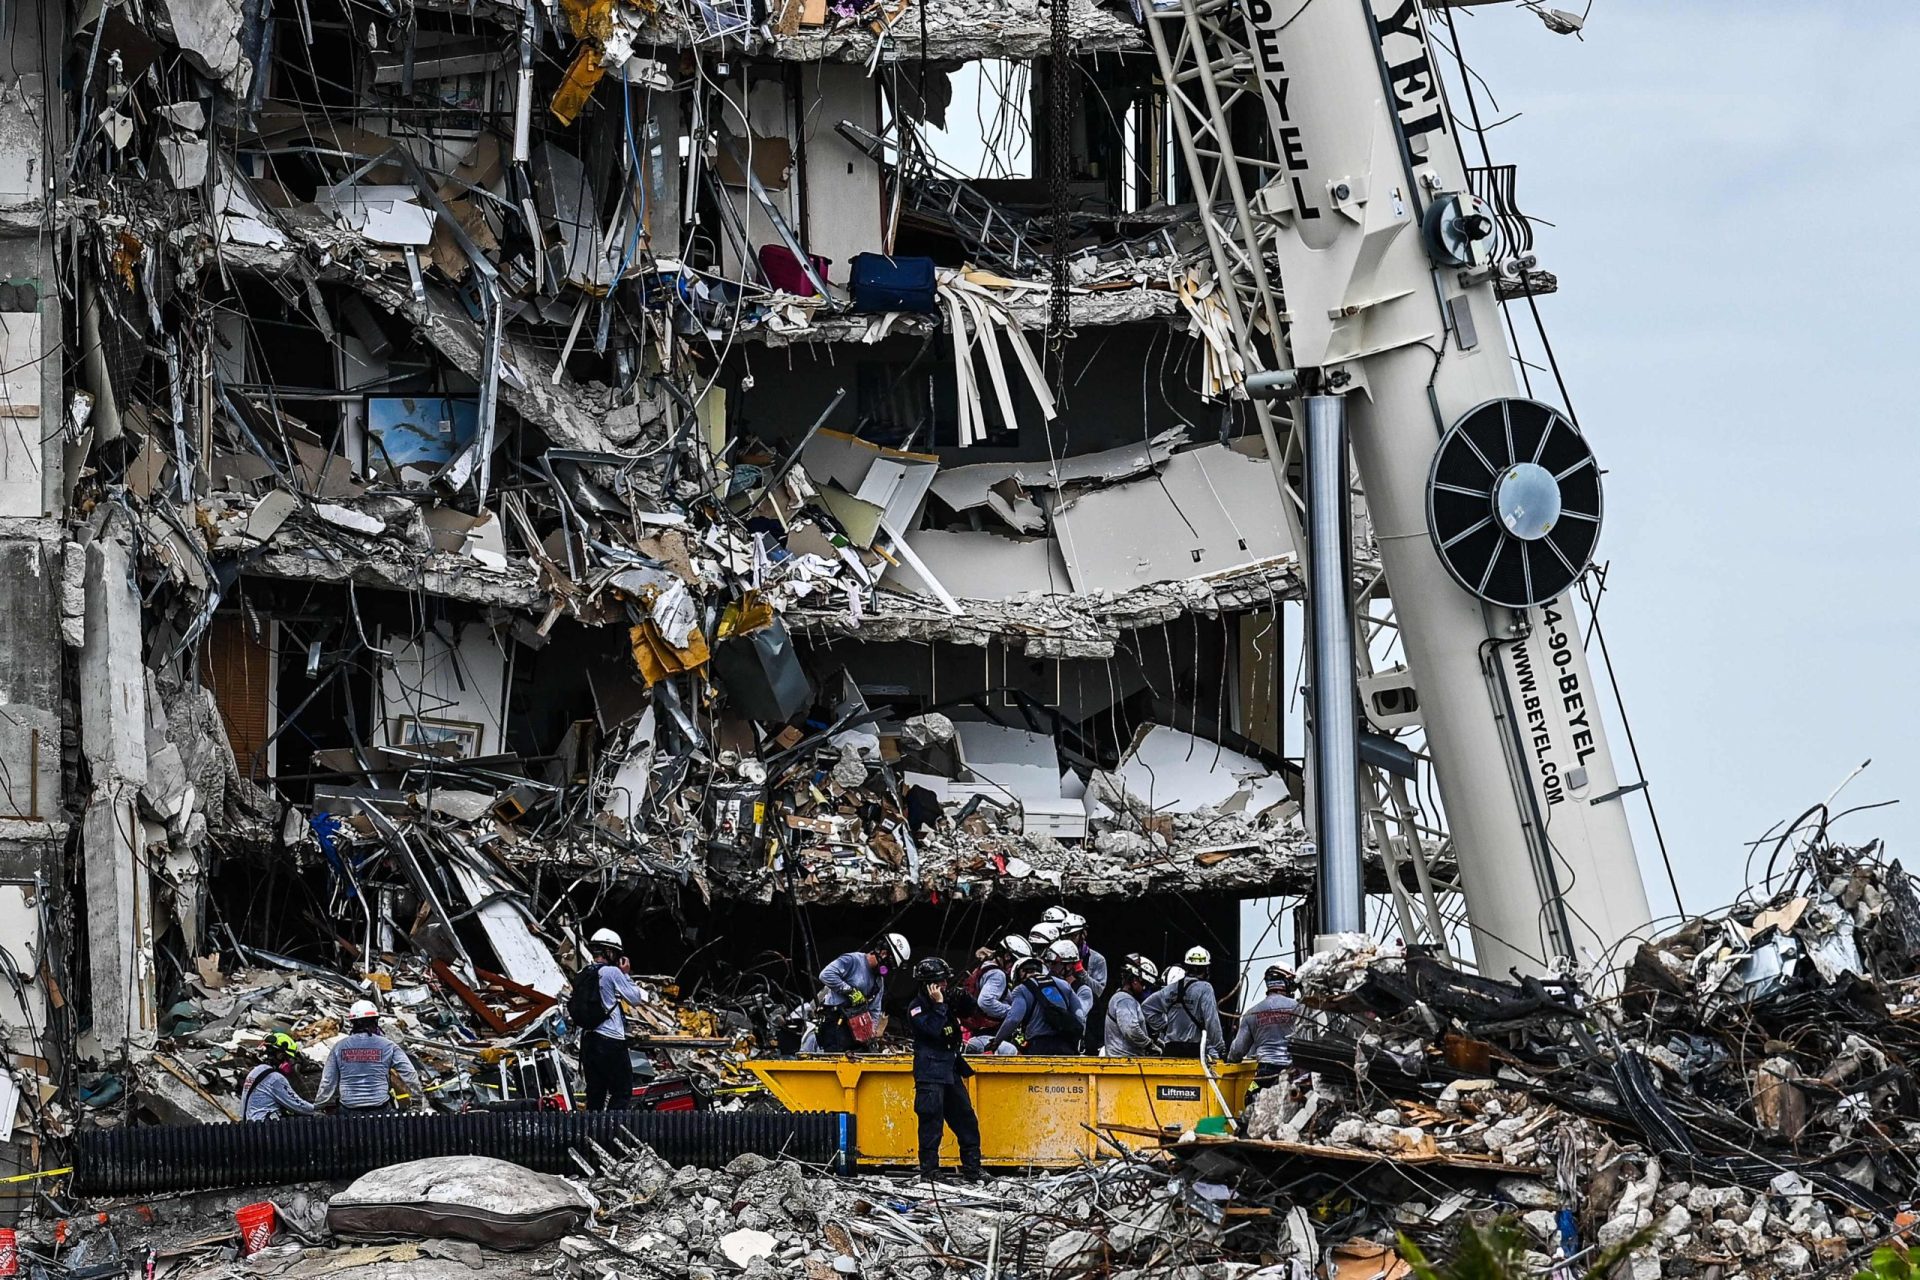 Pelo menos 11 mortos e 150 desaparecidos em colapso de prédio em Miami. Joe Biden vai visitar local | Fotogaleria